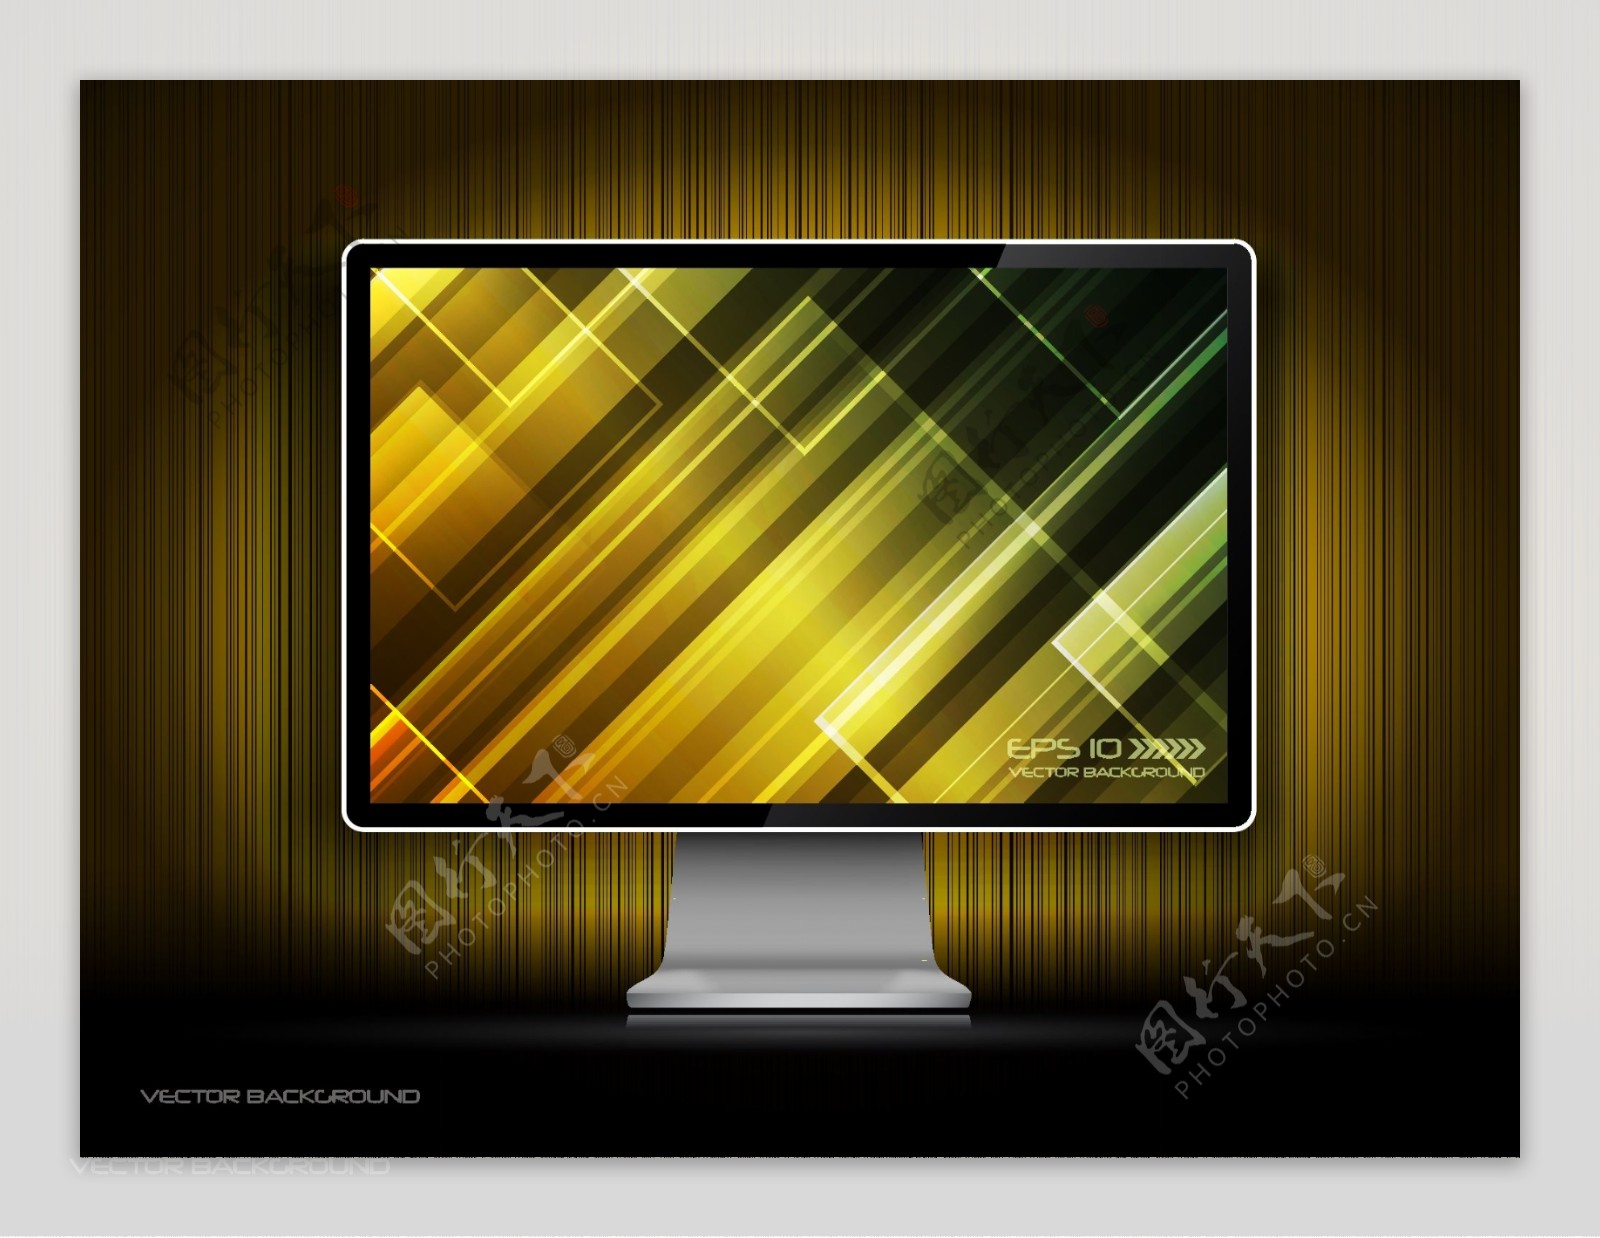 炫彩屏幕液晶电视设计矢量素材